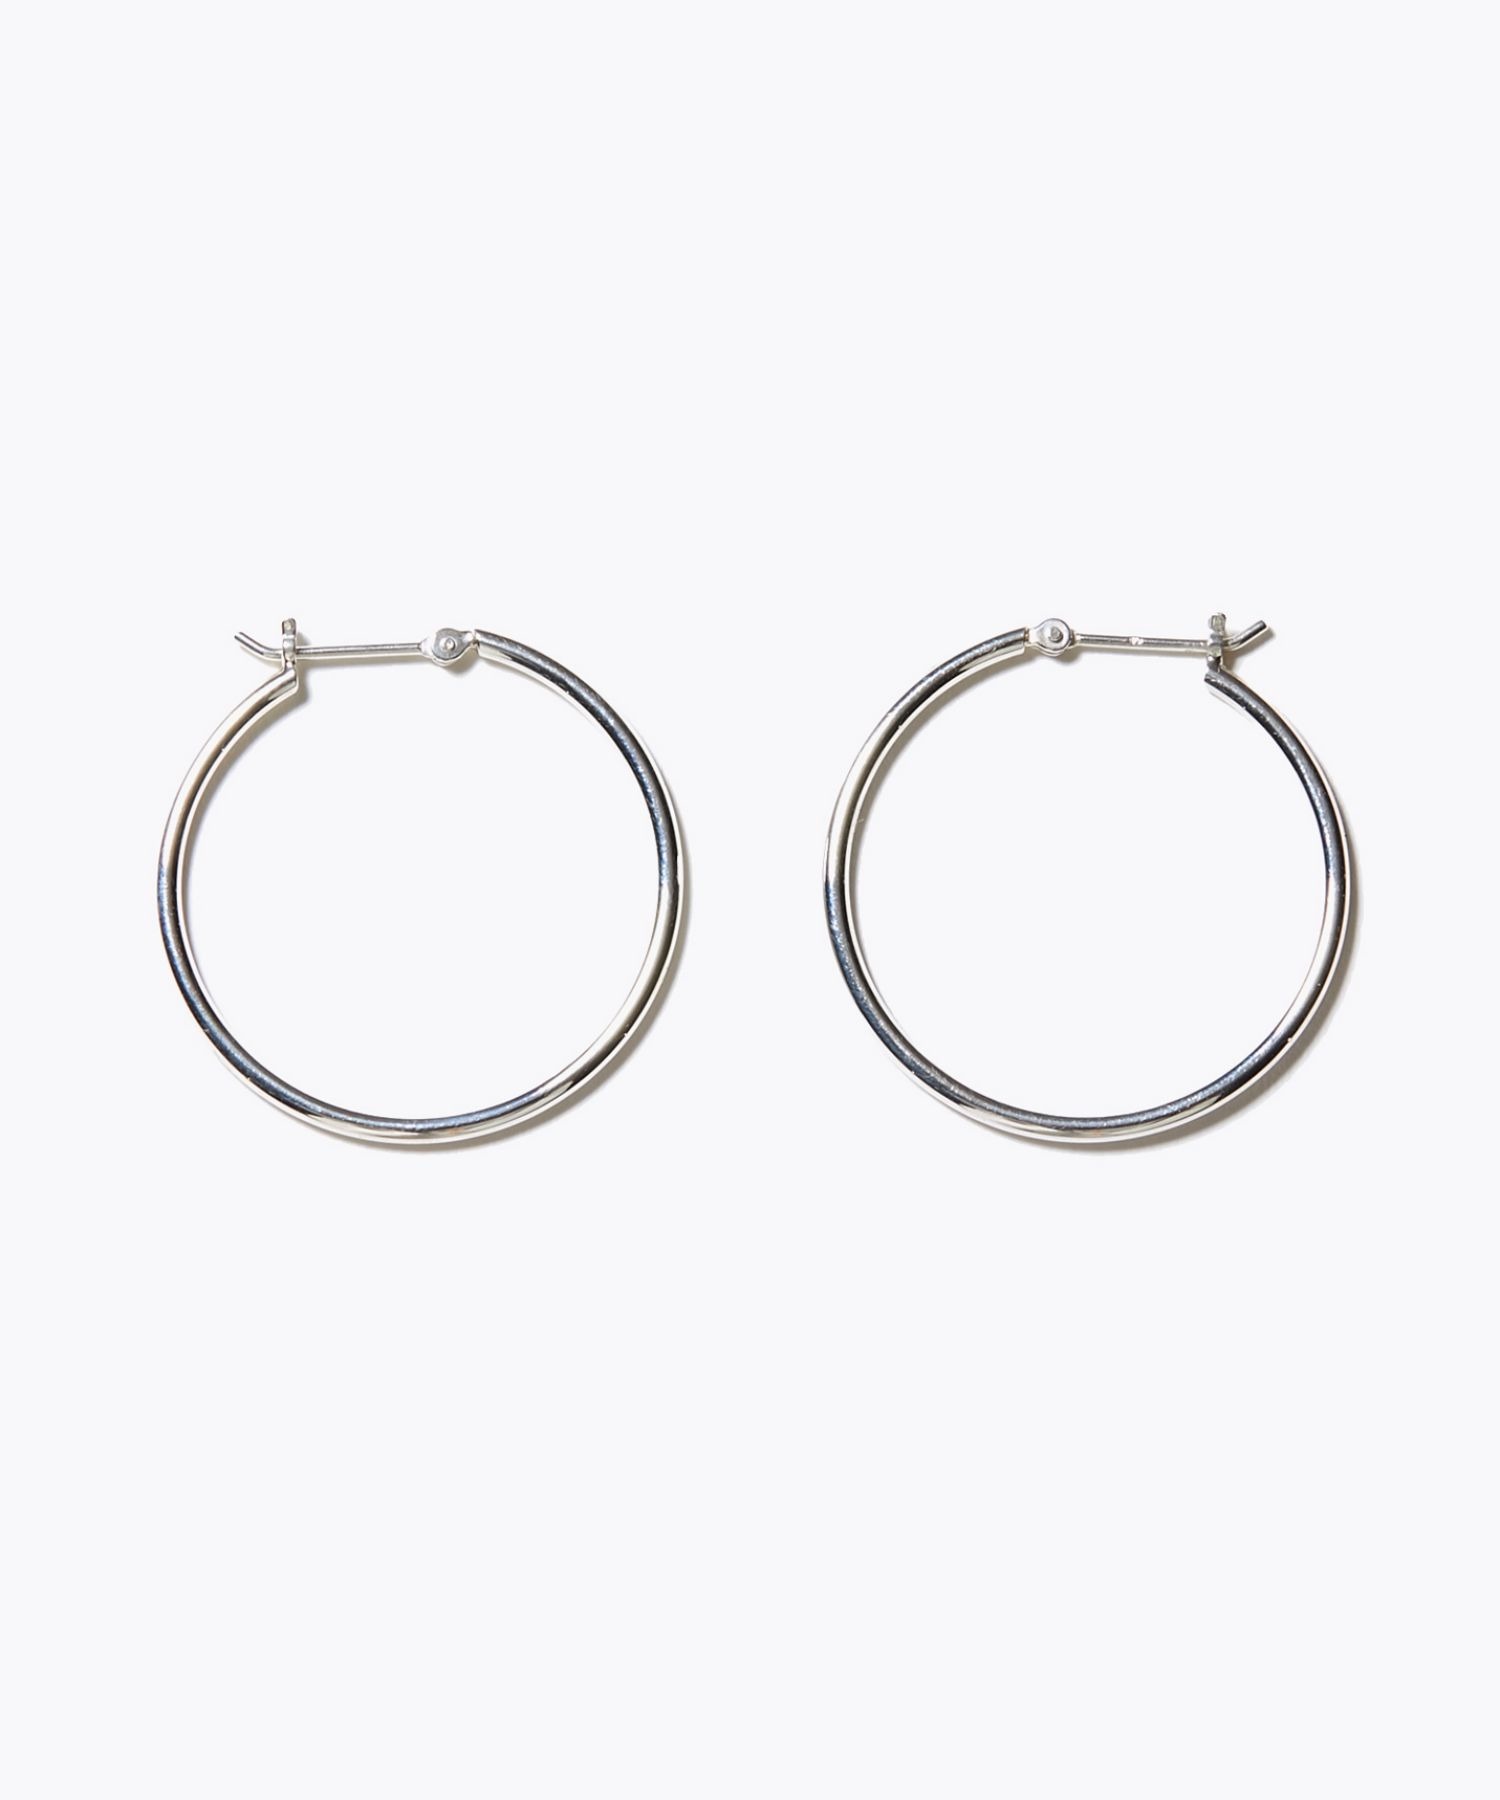 [bone] organic thin middle silver hoop pierced earring